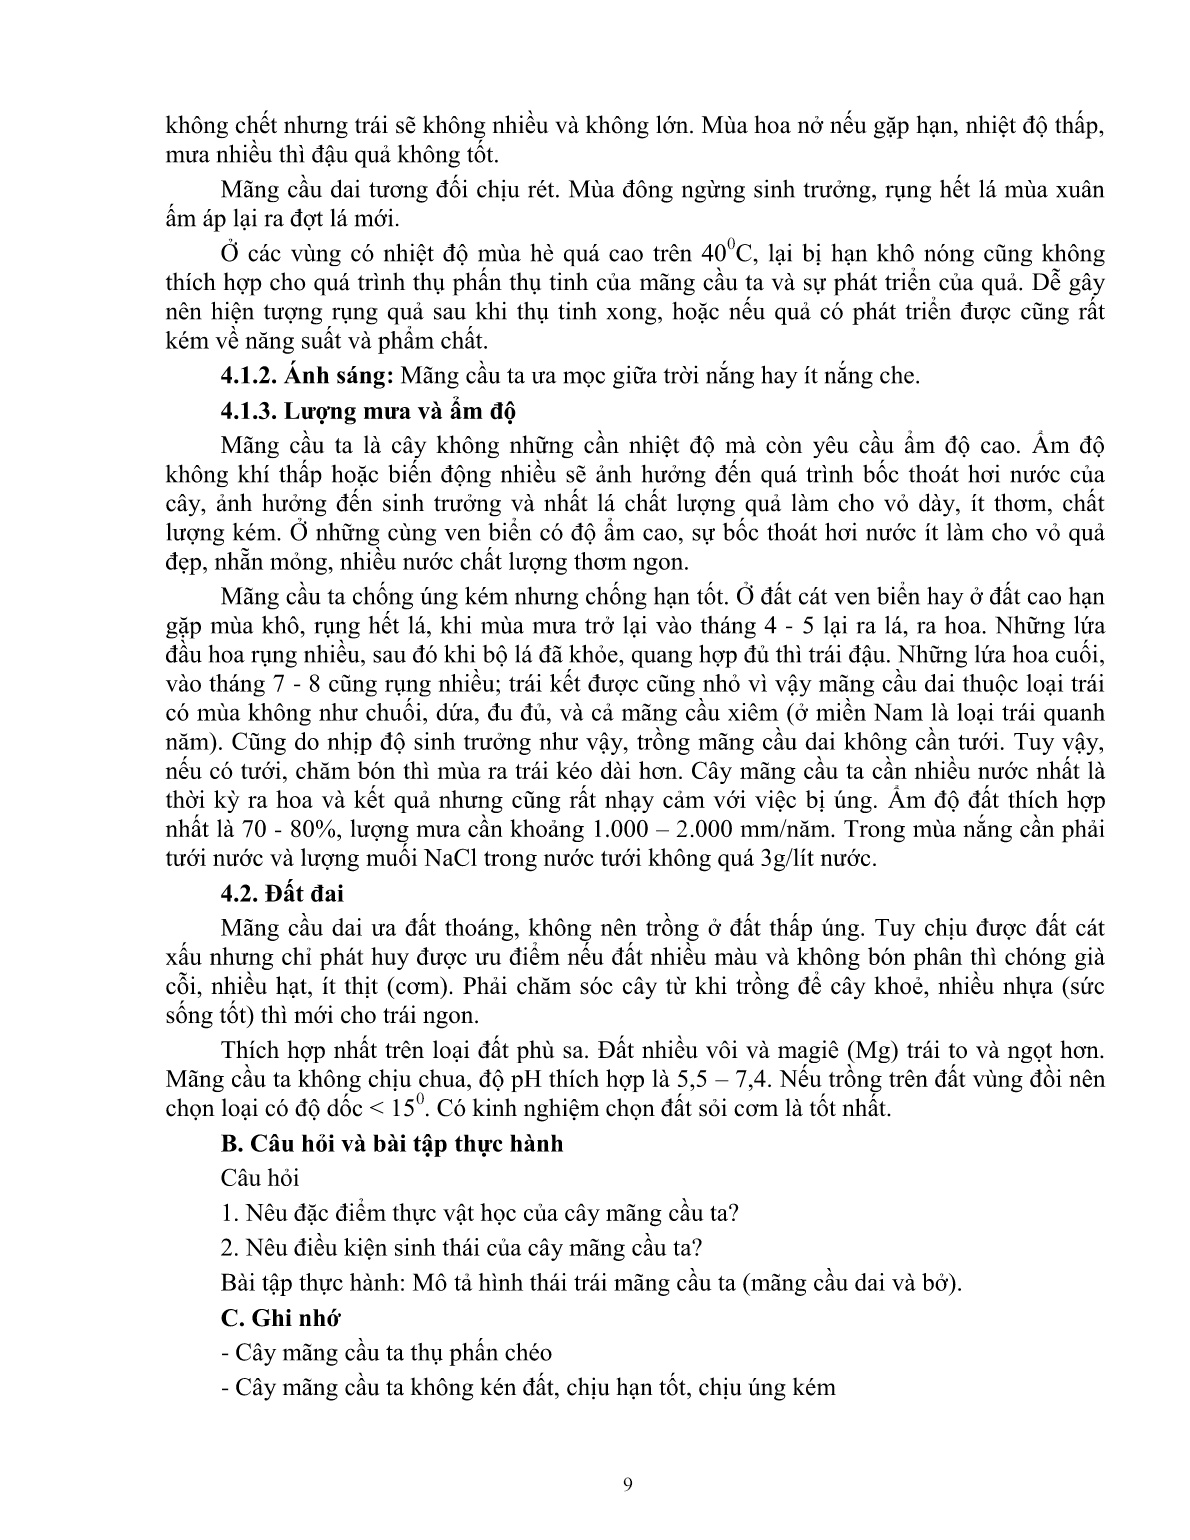 Giáo trình mô đun Nhân giống cây mãng cầu ta (Trình độ: Đào tạo dưới 3 tháng) trang 10